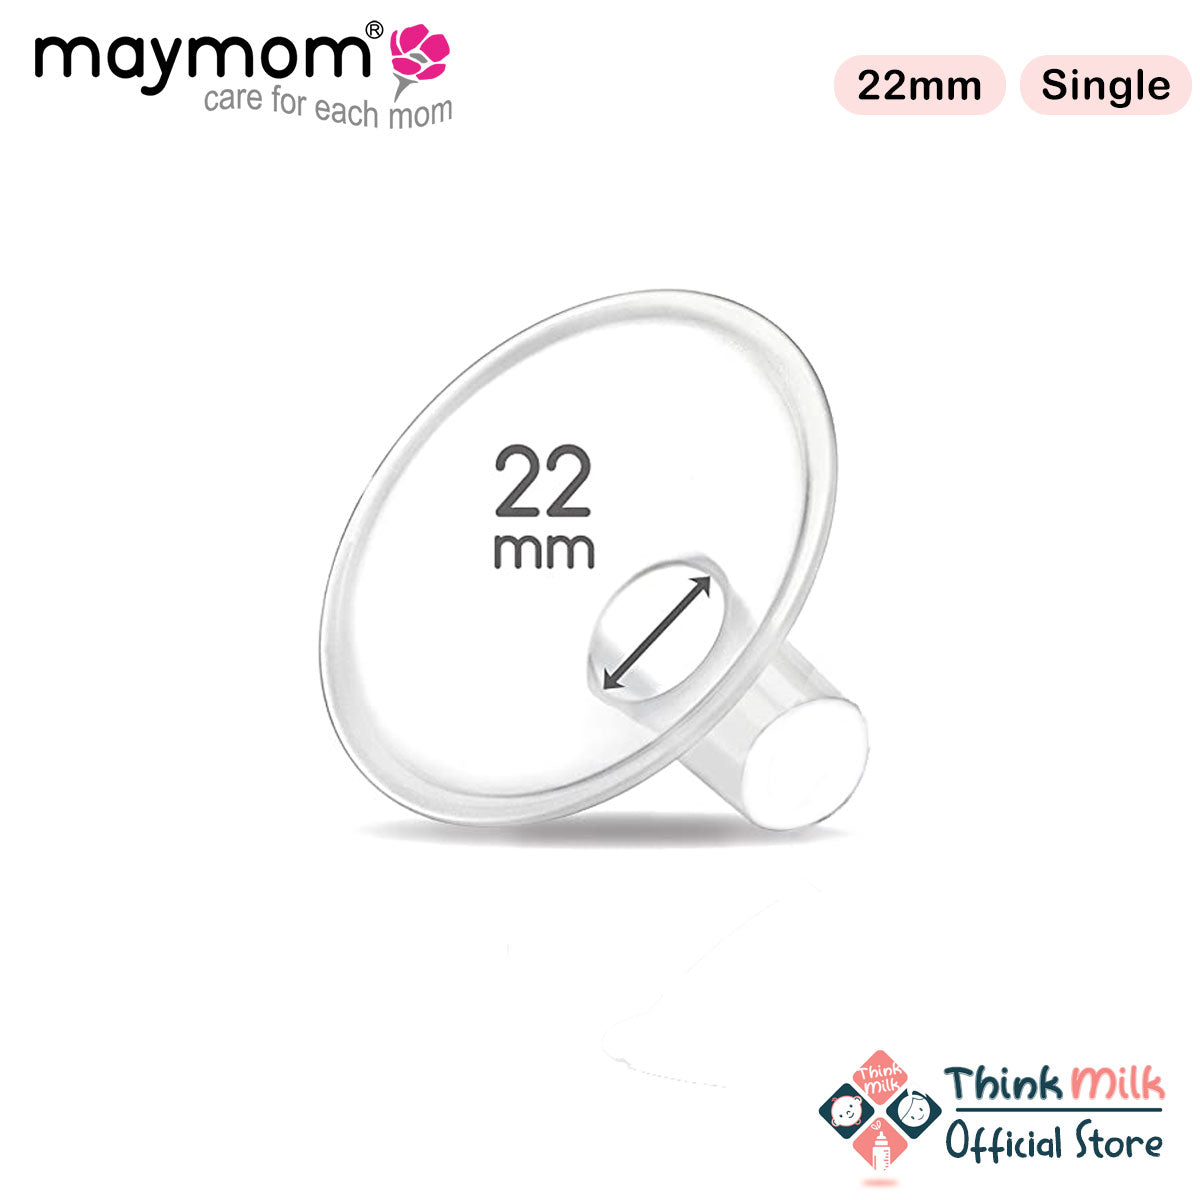 Maymom MyFit Breast Shield